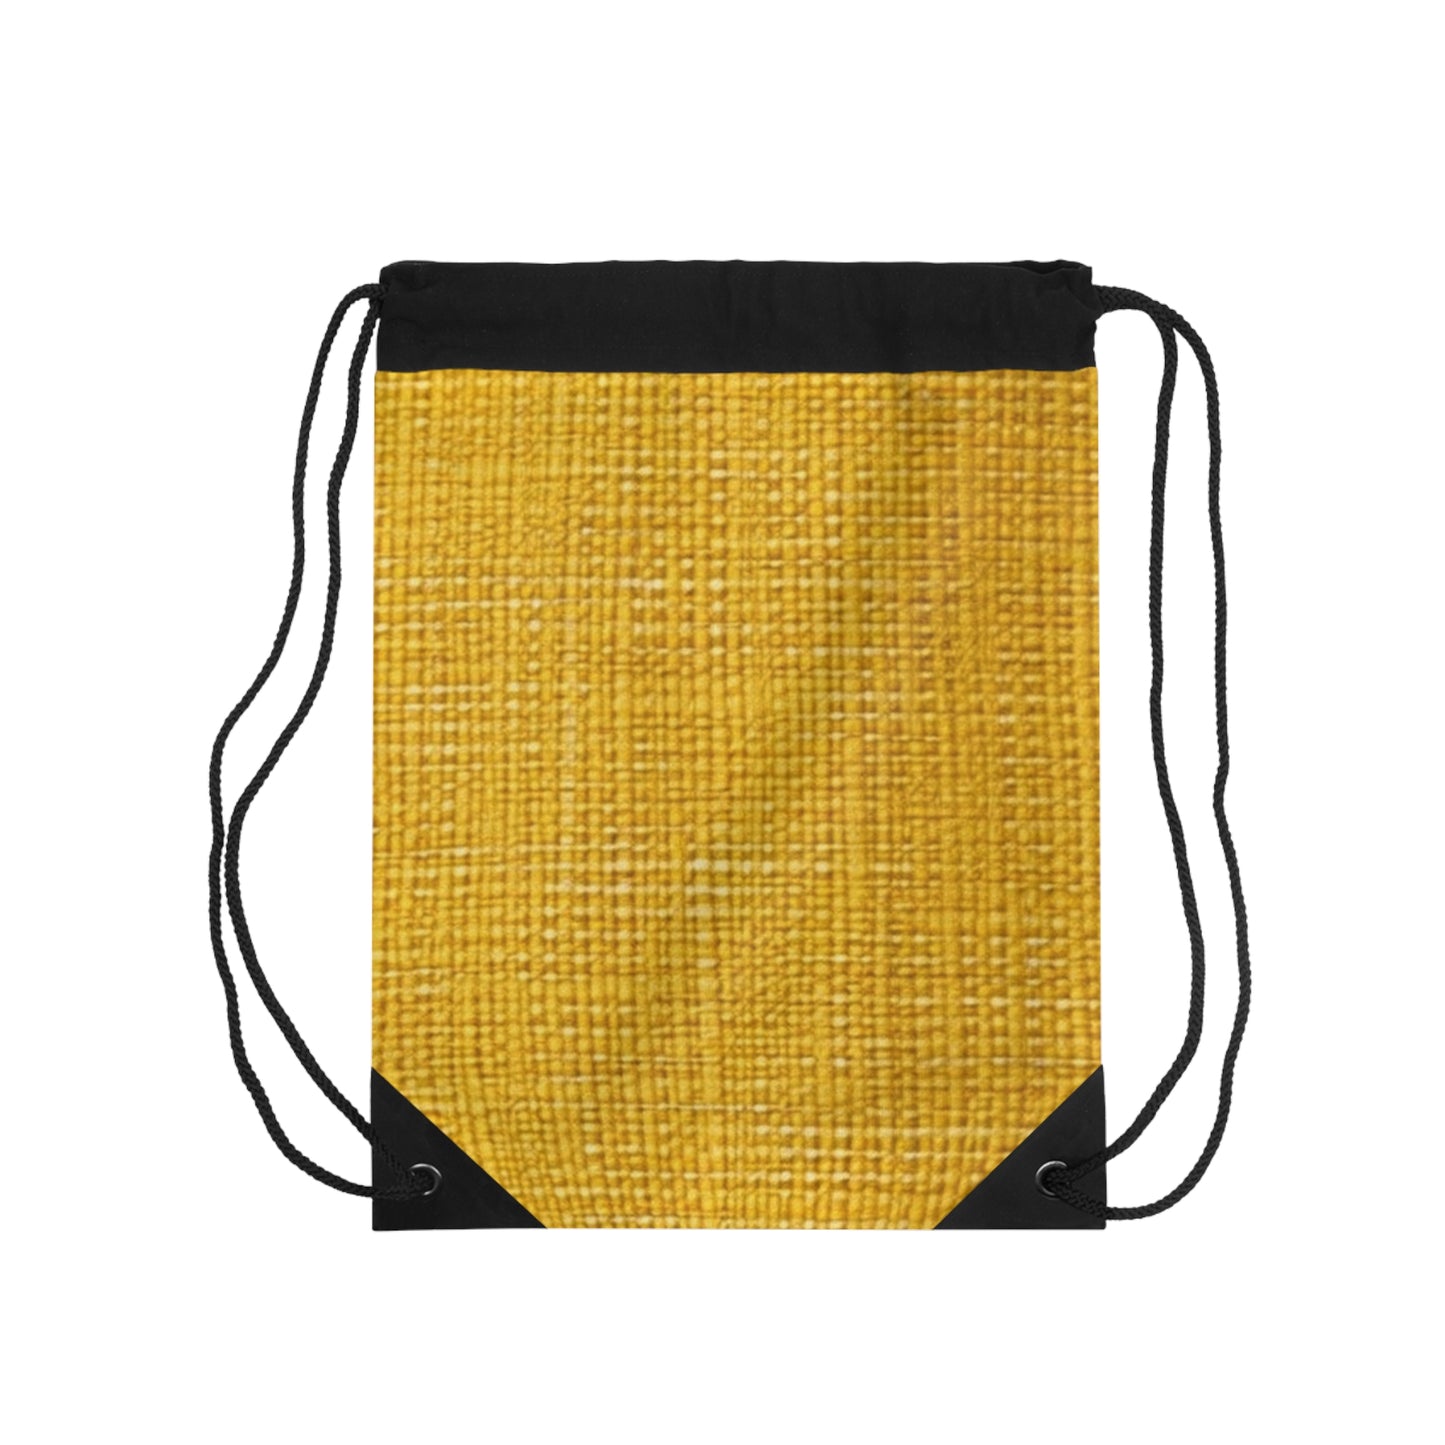 Radiant Sunny Yellow: Denim-Inspired Summer Fabric - Drawstring Bag